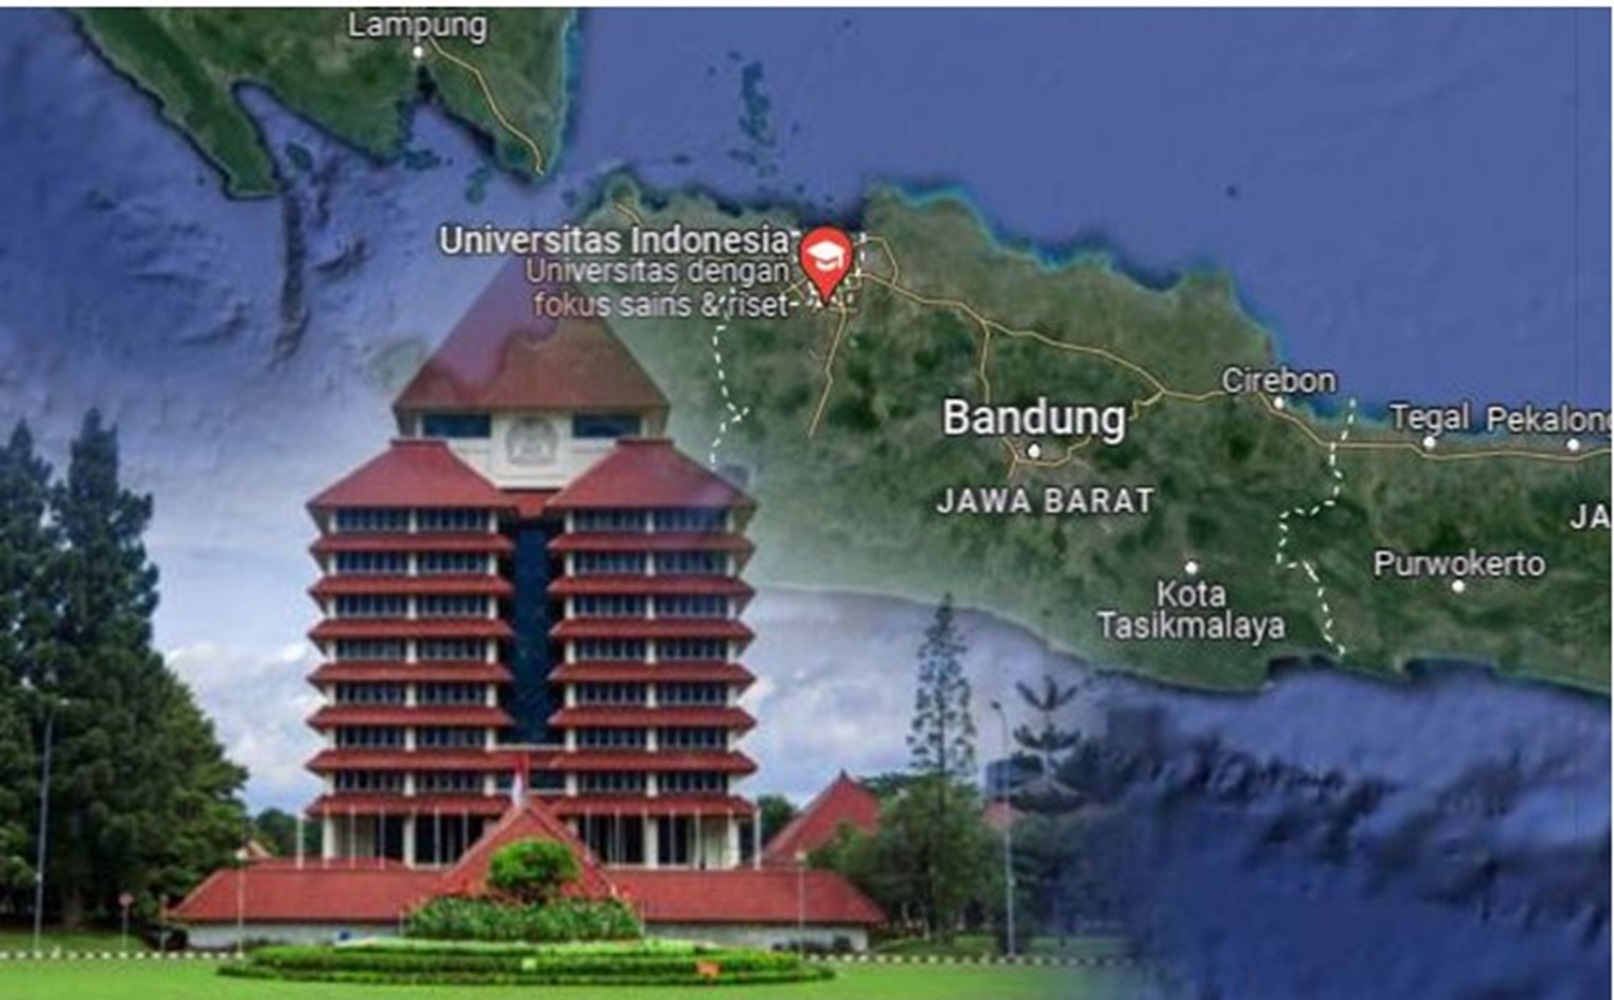 Ini Dia Universitas Tertua di Indonesia, Salah Satunya Universitas Indonesia 